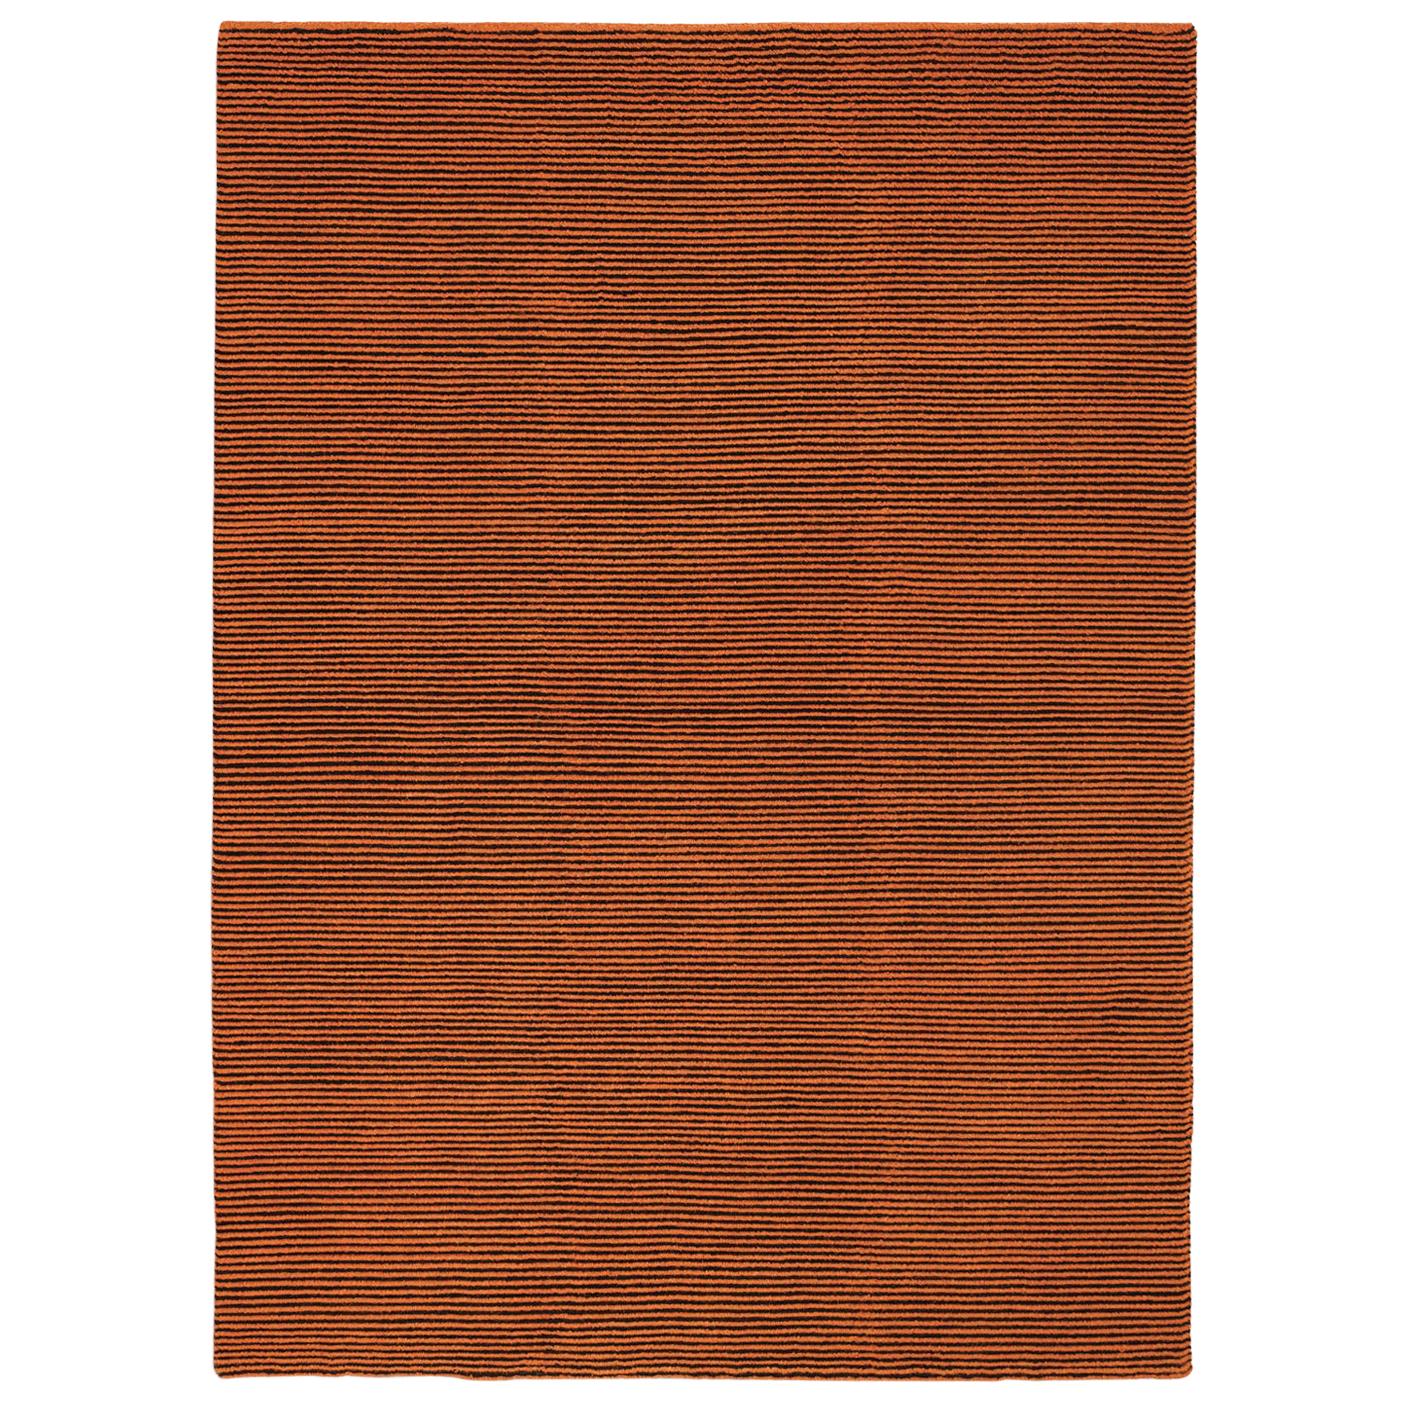 Zeitgenössischer weicher natürlicher orangefarbener Teppich aus reiner Wolle von Deanna Comellini 170x240 cm